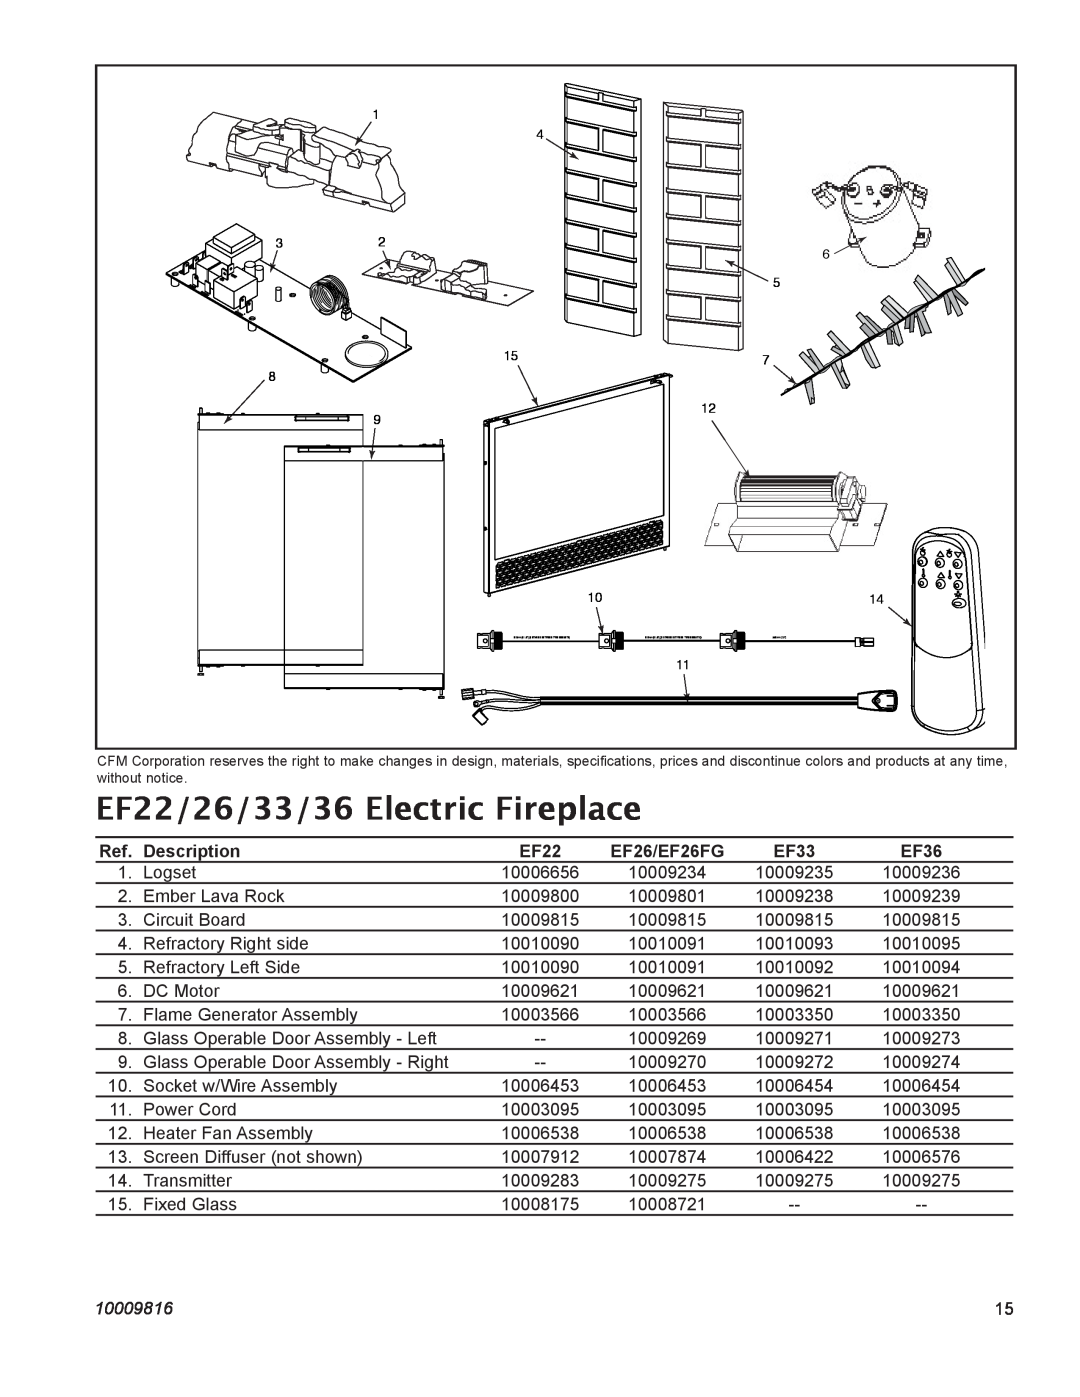 CFM Corporation manual EF22/26/33/36 Electric Fireplace, Description, EF26/EF26FG, EF33, EF36, 10009816 